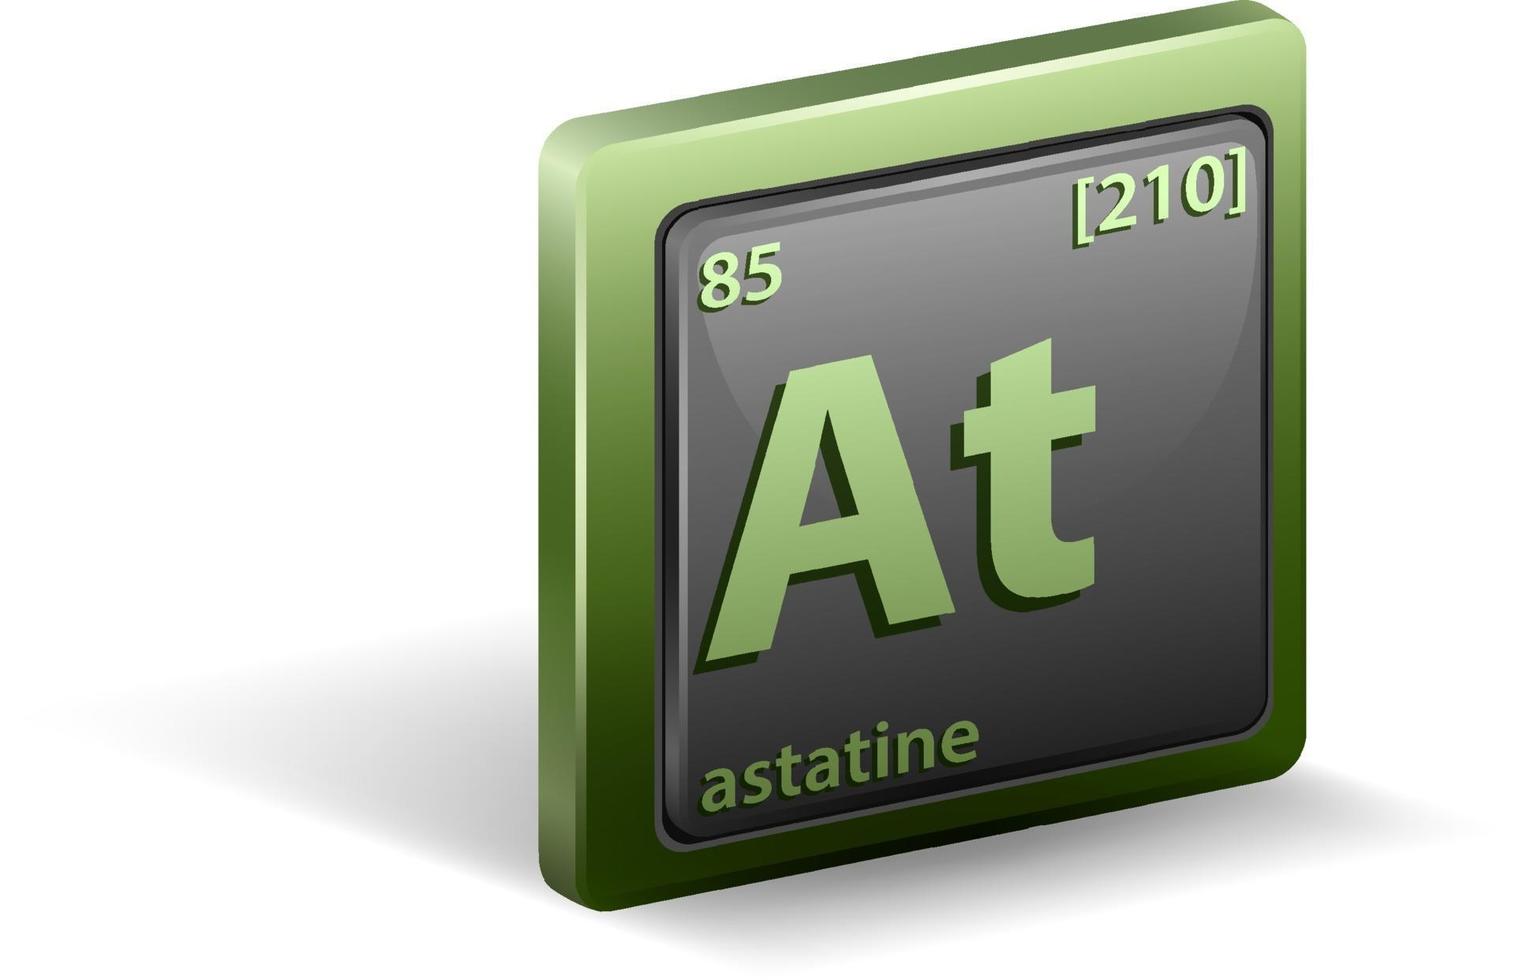 élément chimique astatine. symbole chimique avec numéro atomique et masse atomique. vecteur